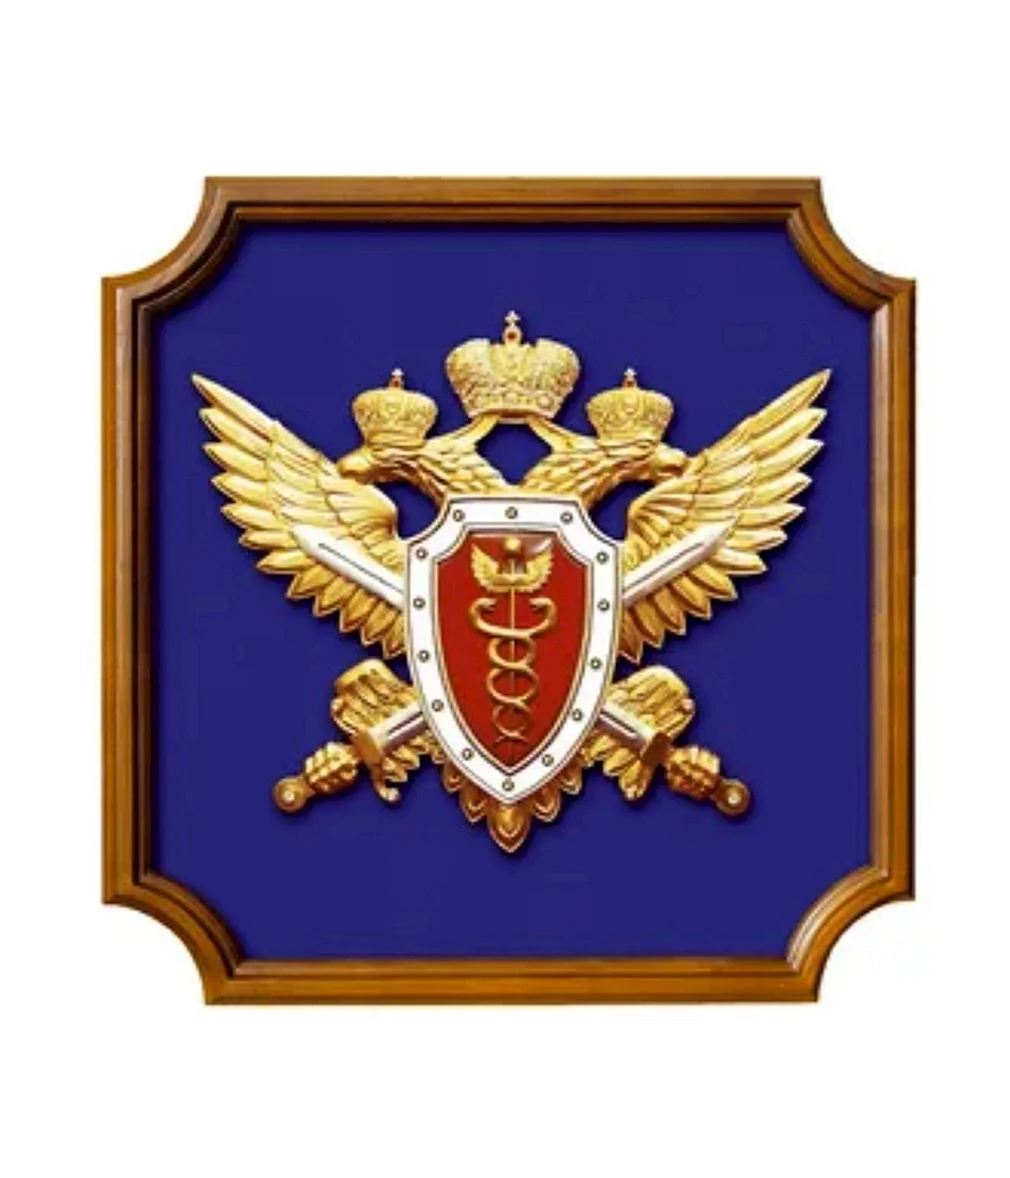 Федеральная служба налоговой полиции Российской Федерации